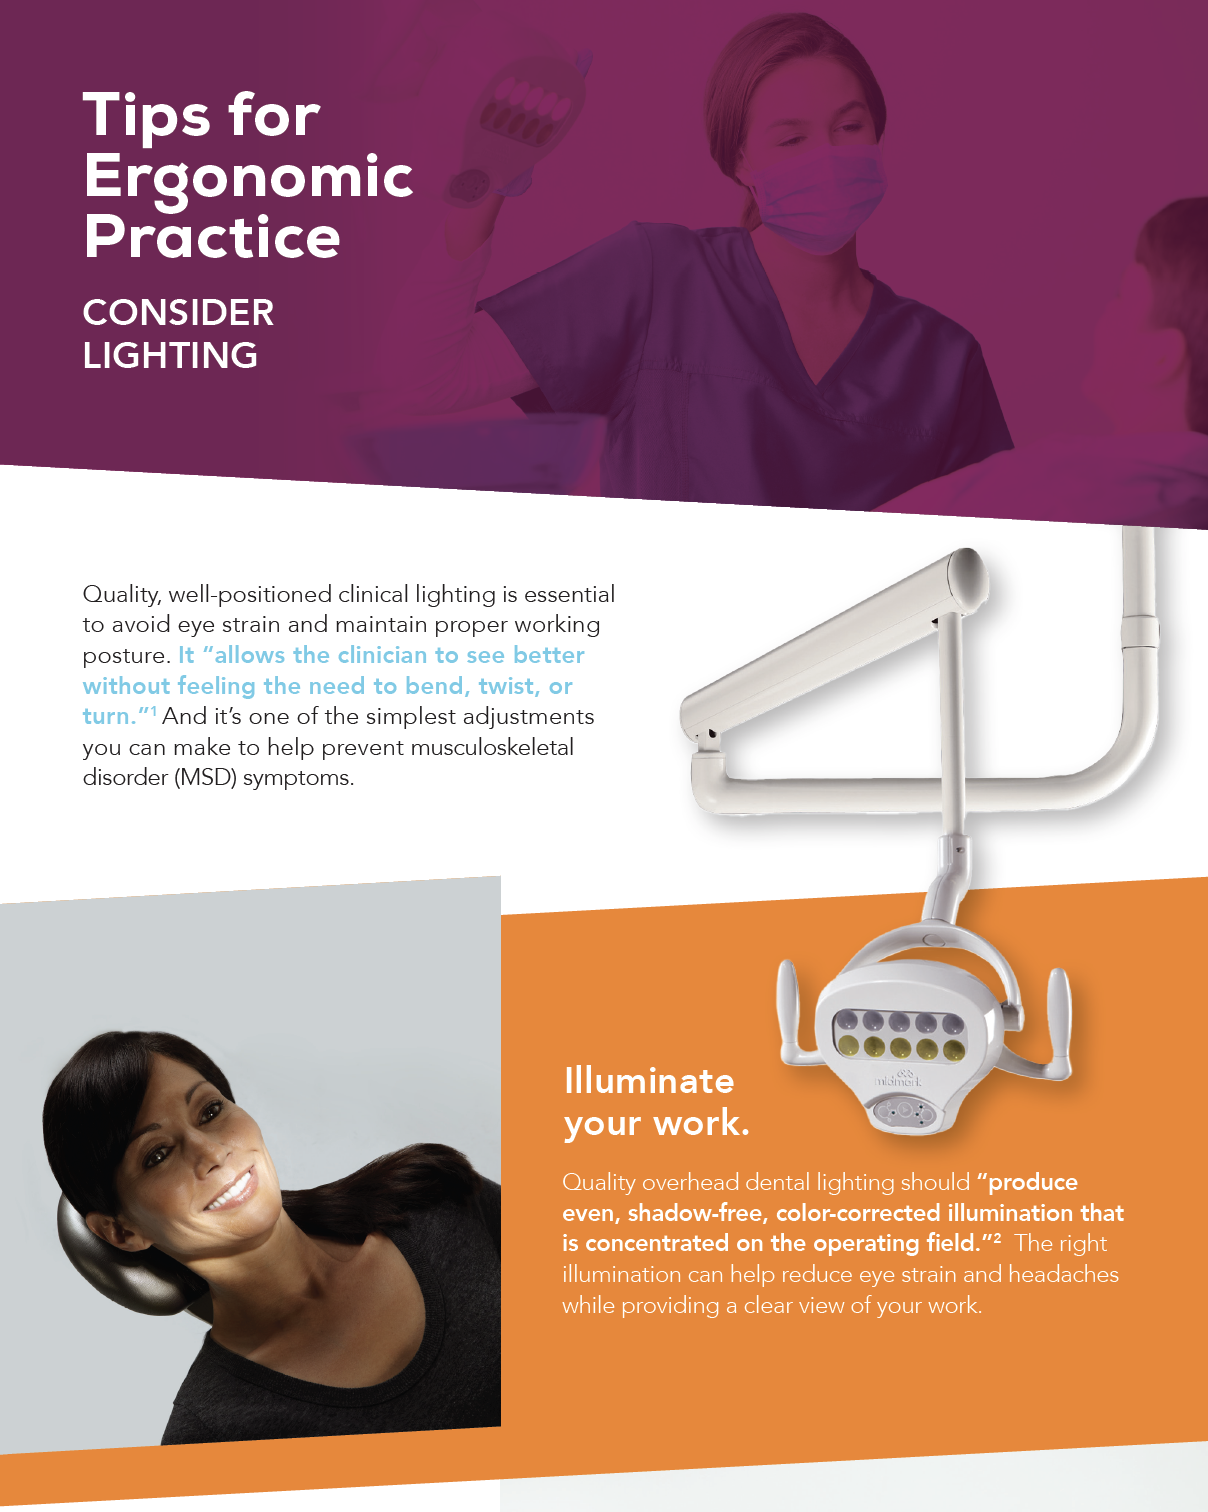 Tips for Ergonomic Practice - Consider Lighting